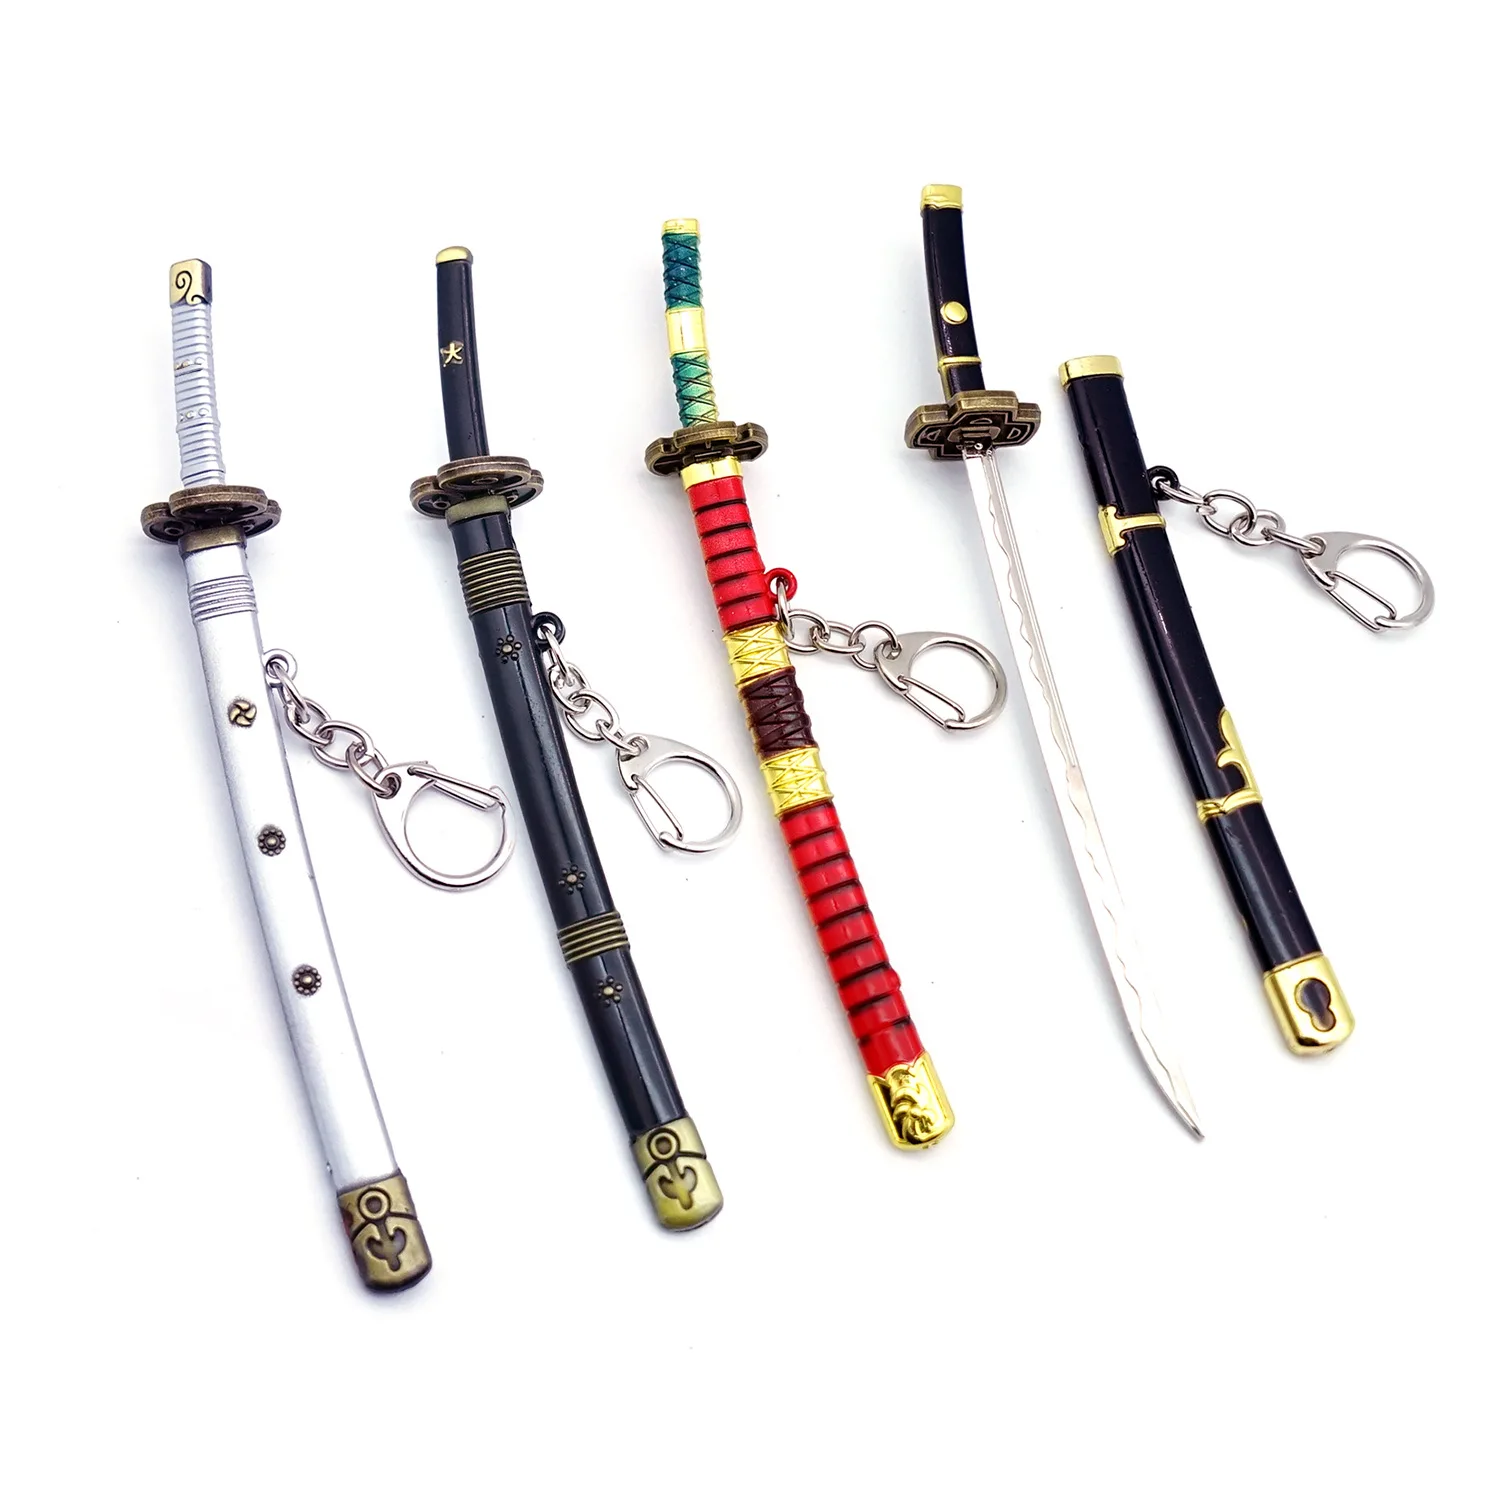 

Брелок для ключей ророноа Зоро, цепочка для ключей с открытым лезвием меча, модель оружия для косплея, подарок, бижутерия, 15 см, один шт.